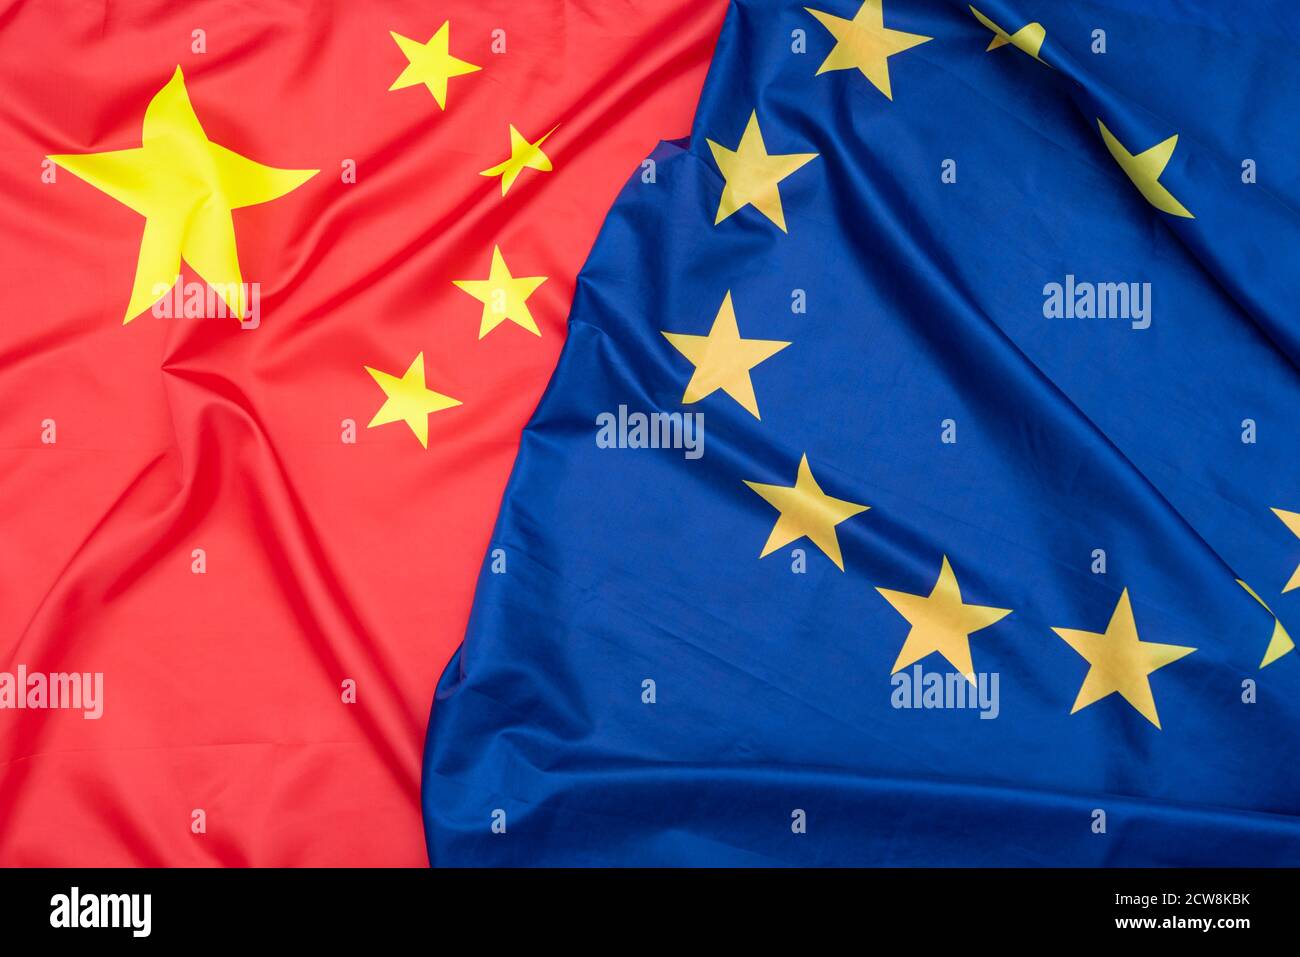 Real bandera de tela natural de China o Bandera Nacional de La República Popular China y la bandera de la Unión Europea como textura o fondo Foto de stock